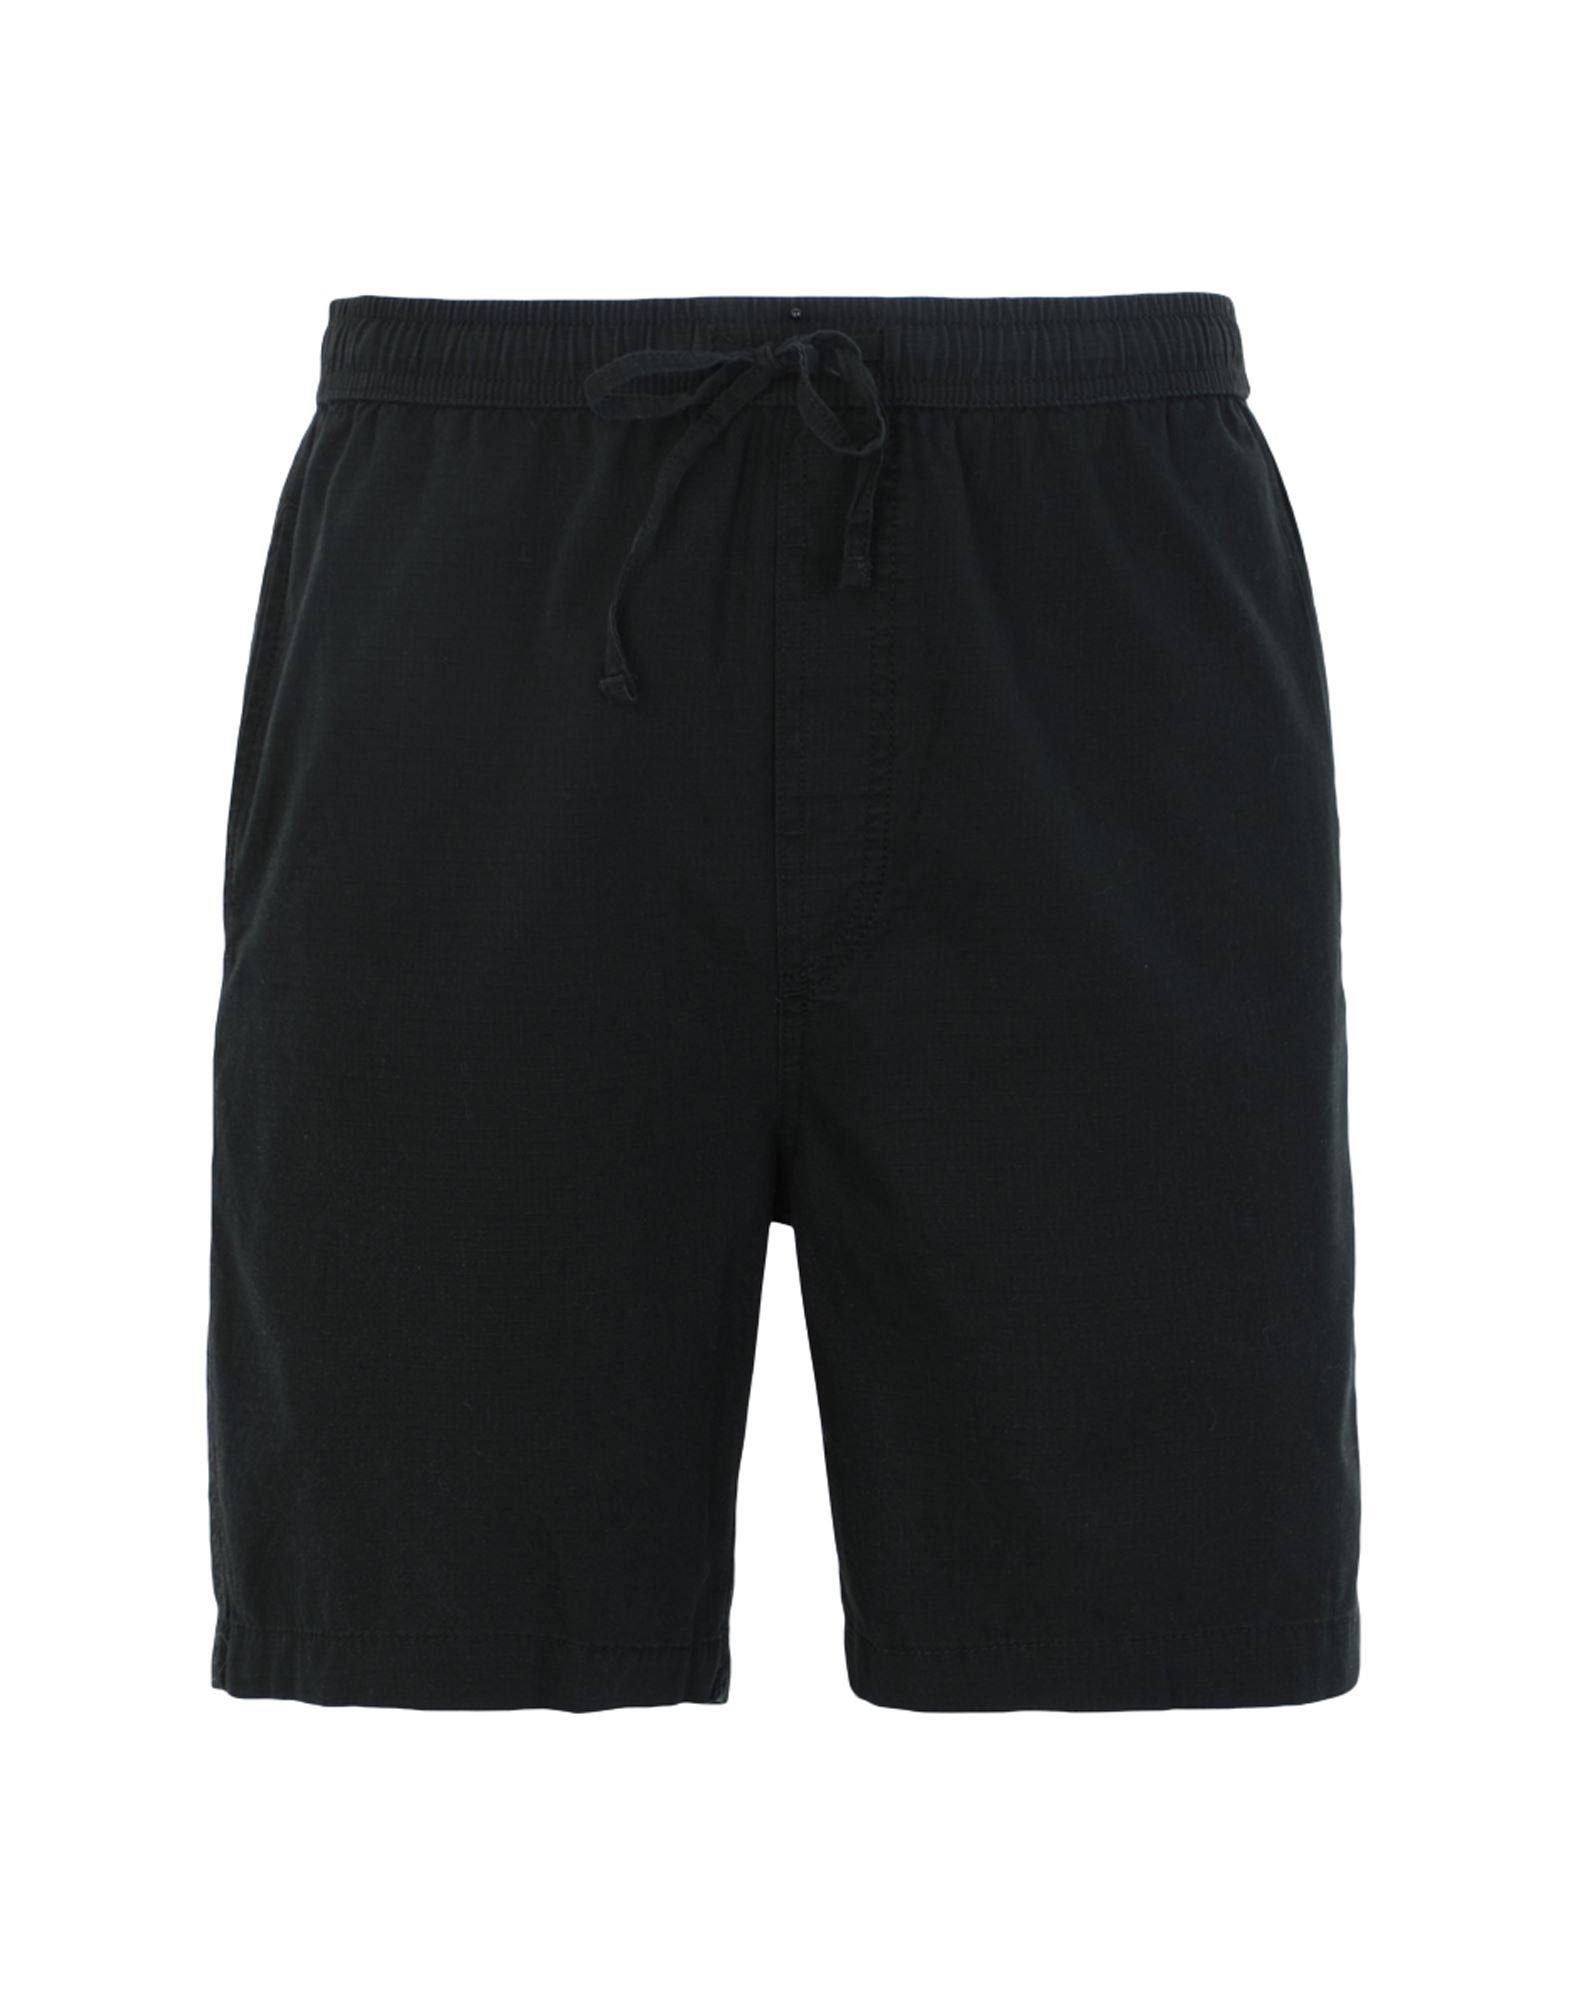 DEDICATED. Shorts & Bermuda Shorts